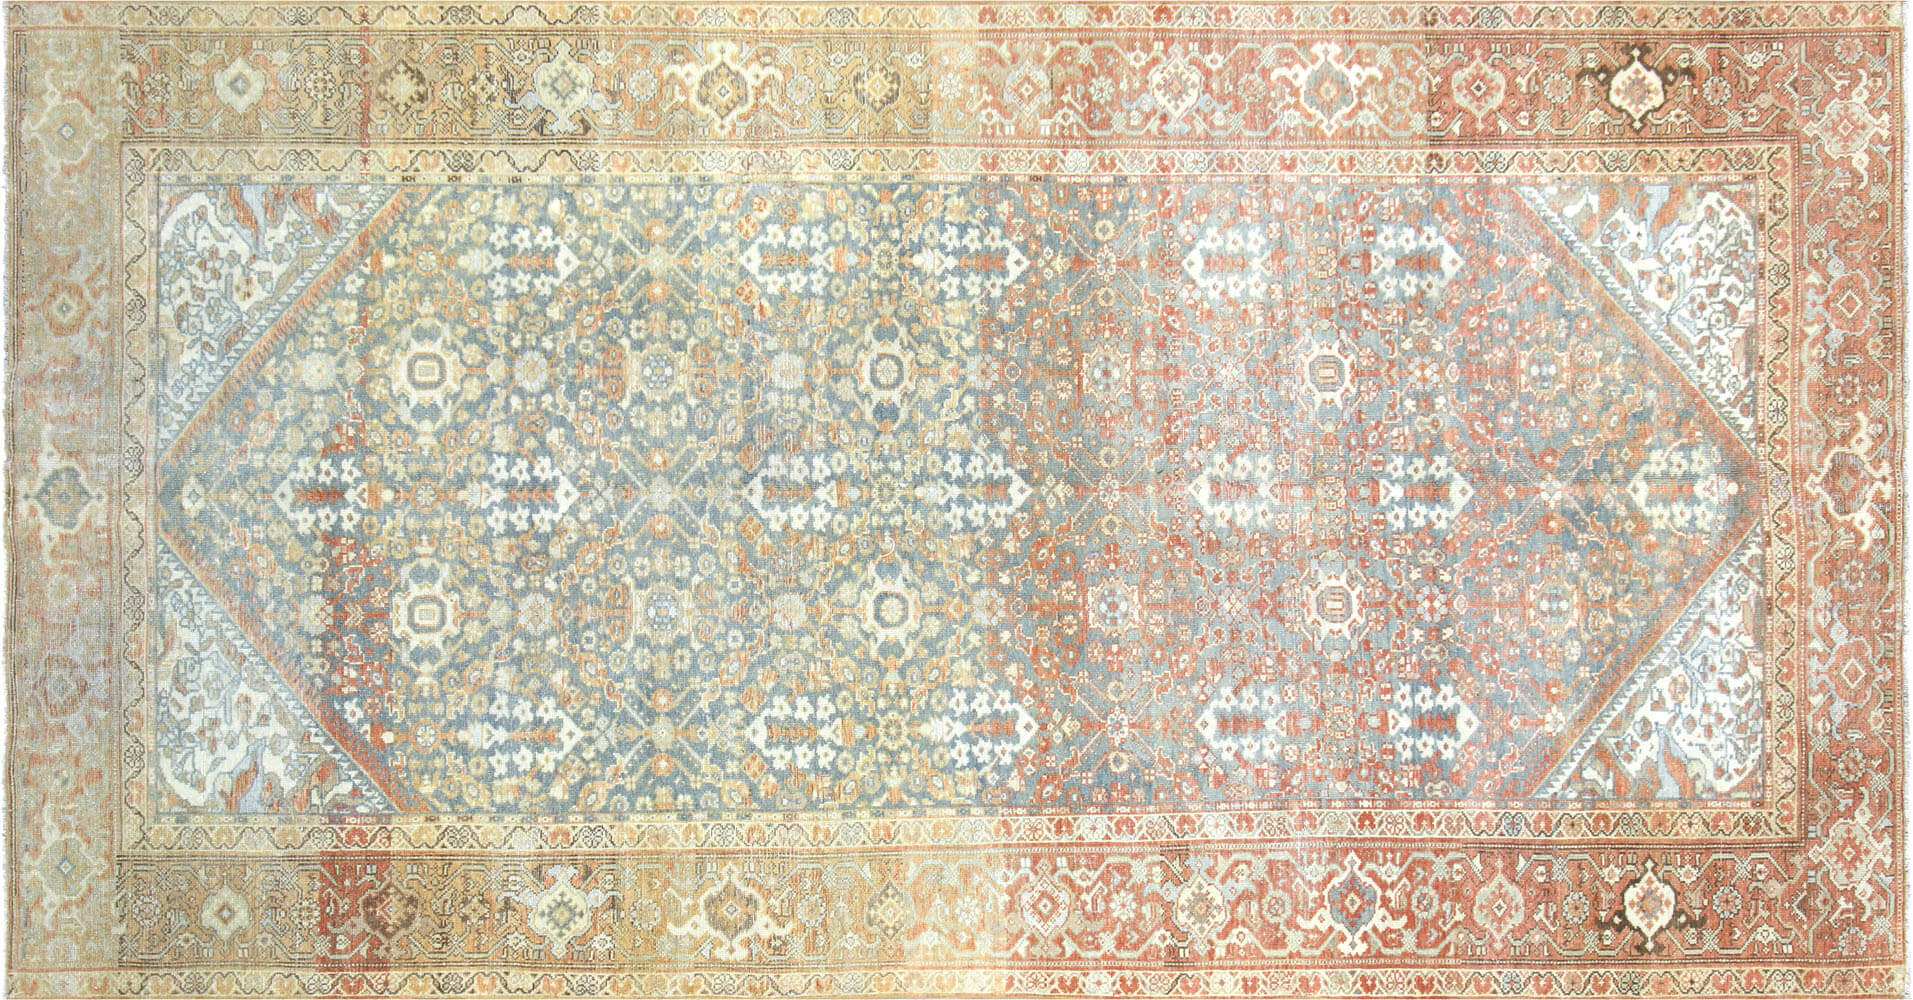 1940s Persian Melayer Rug, 5'2" x 9'10"~P77632266